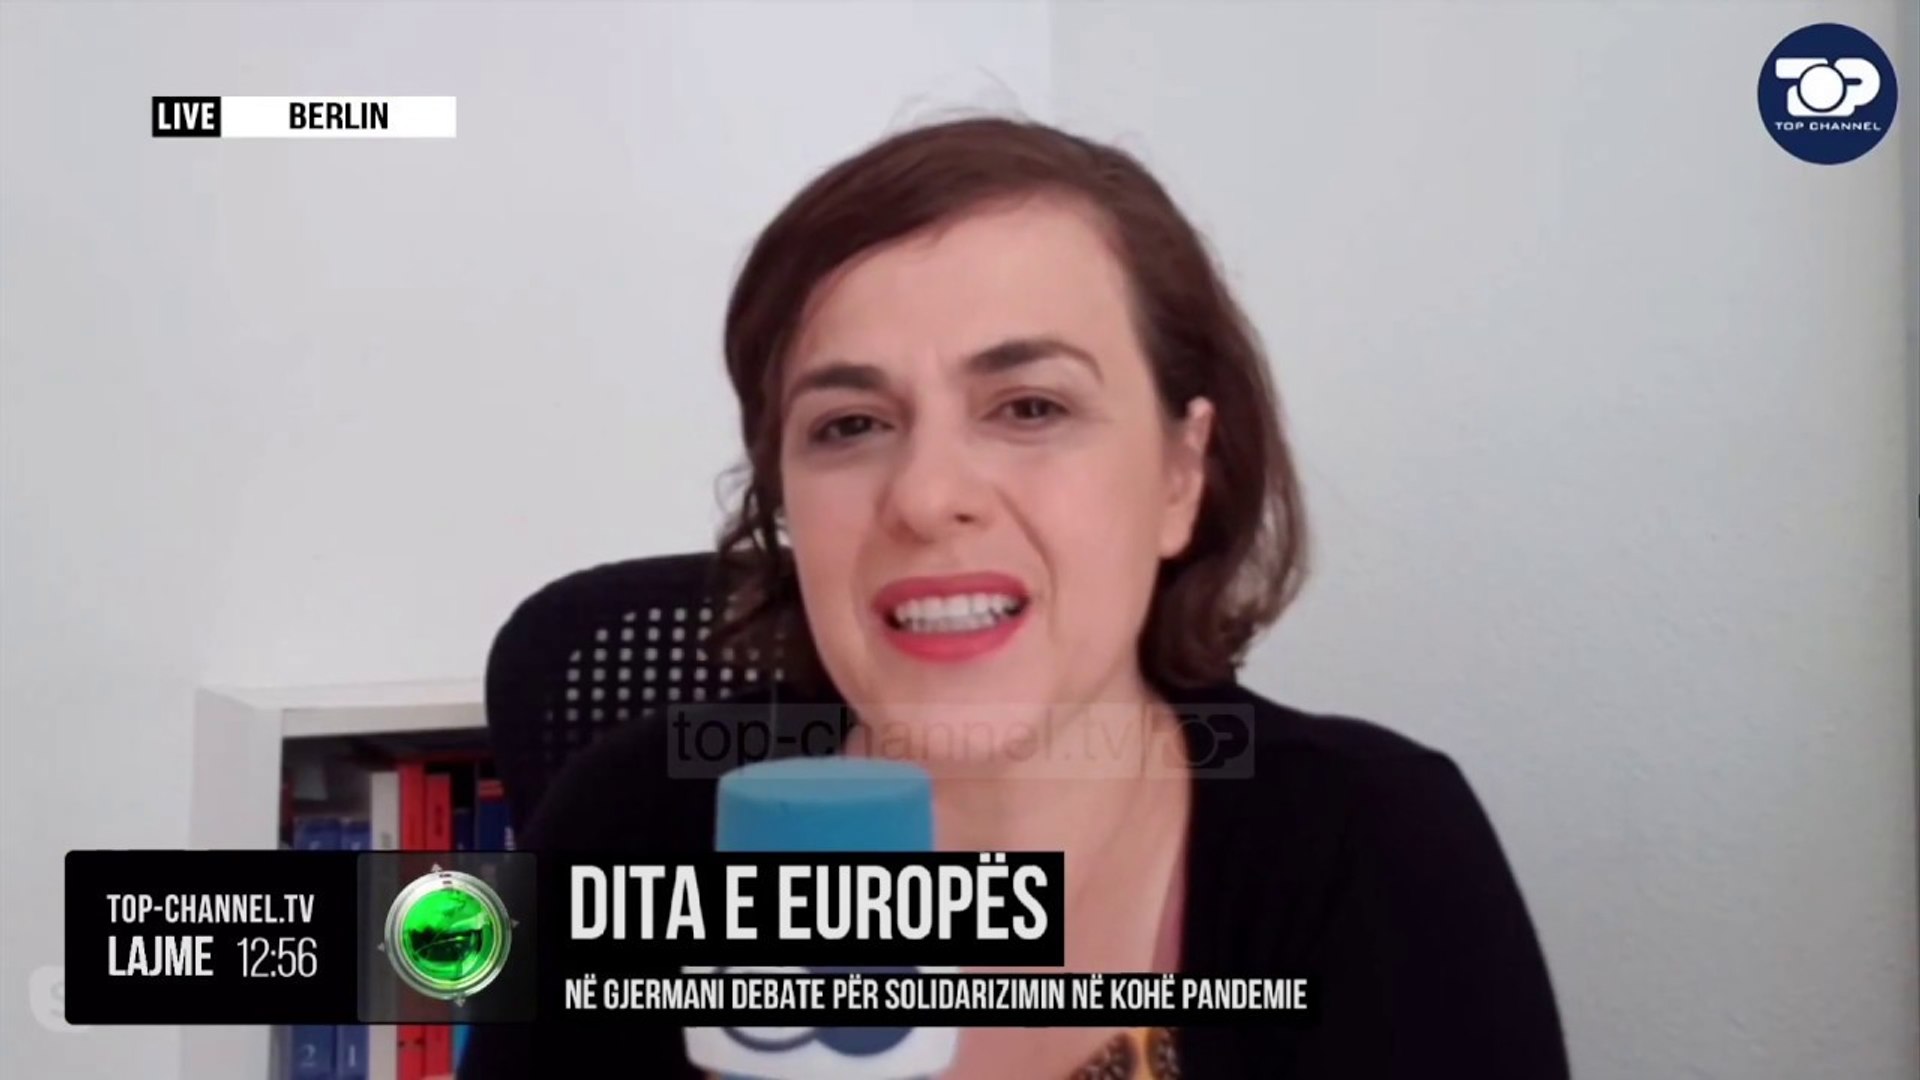 Dita e Europës / Në Gjermani debate për solidarizimin në kohë pandemie -  video Dailymotion